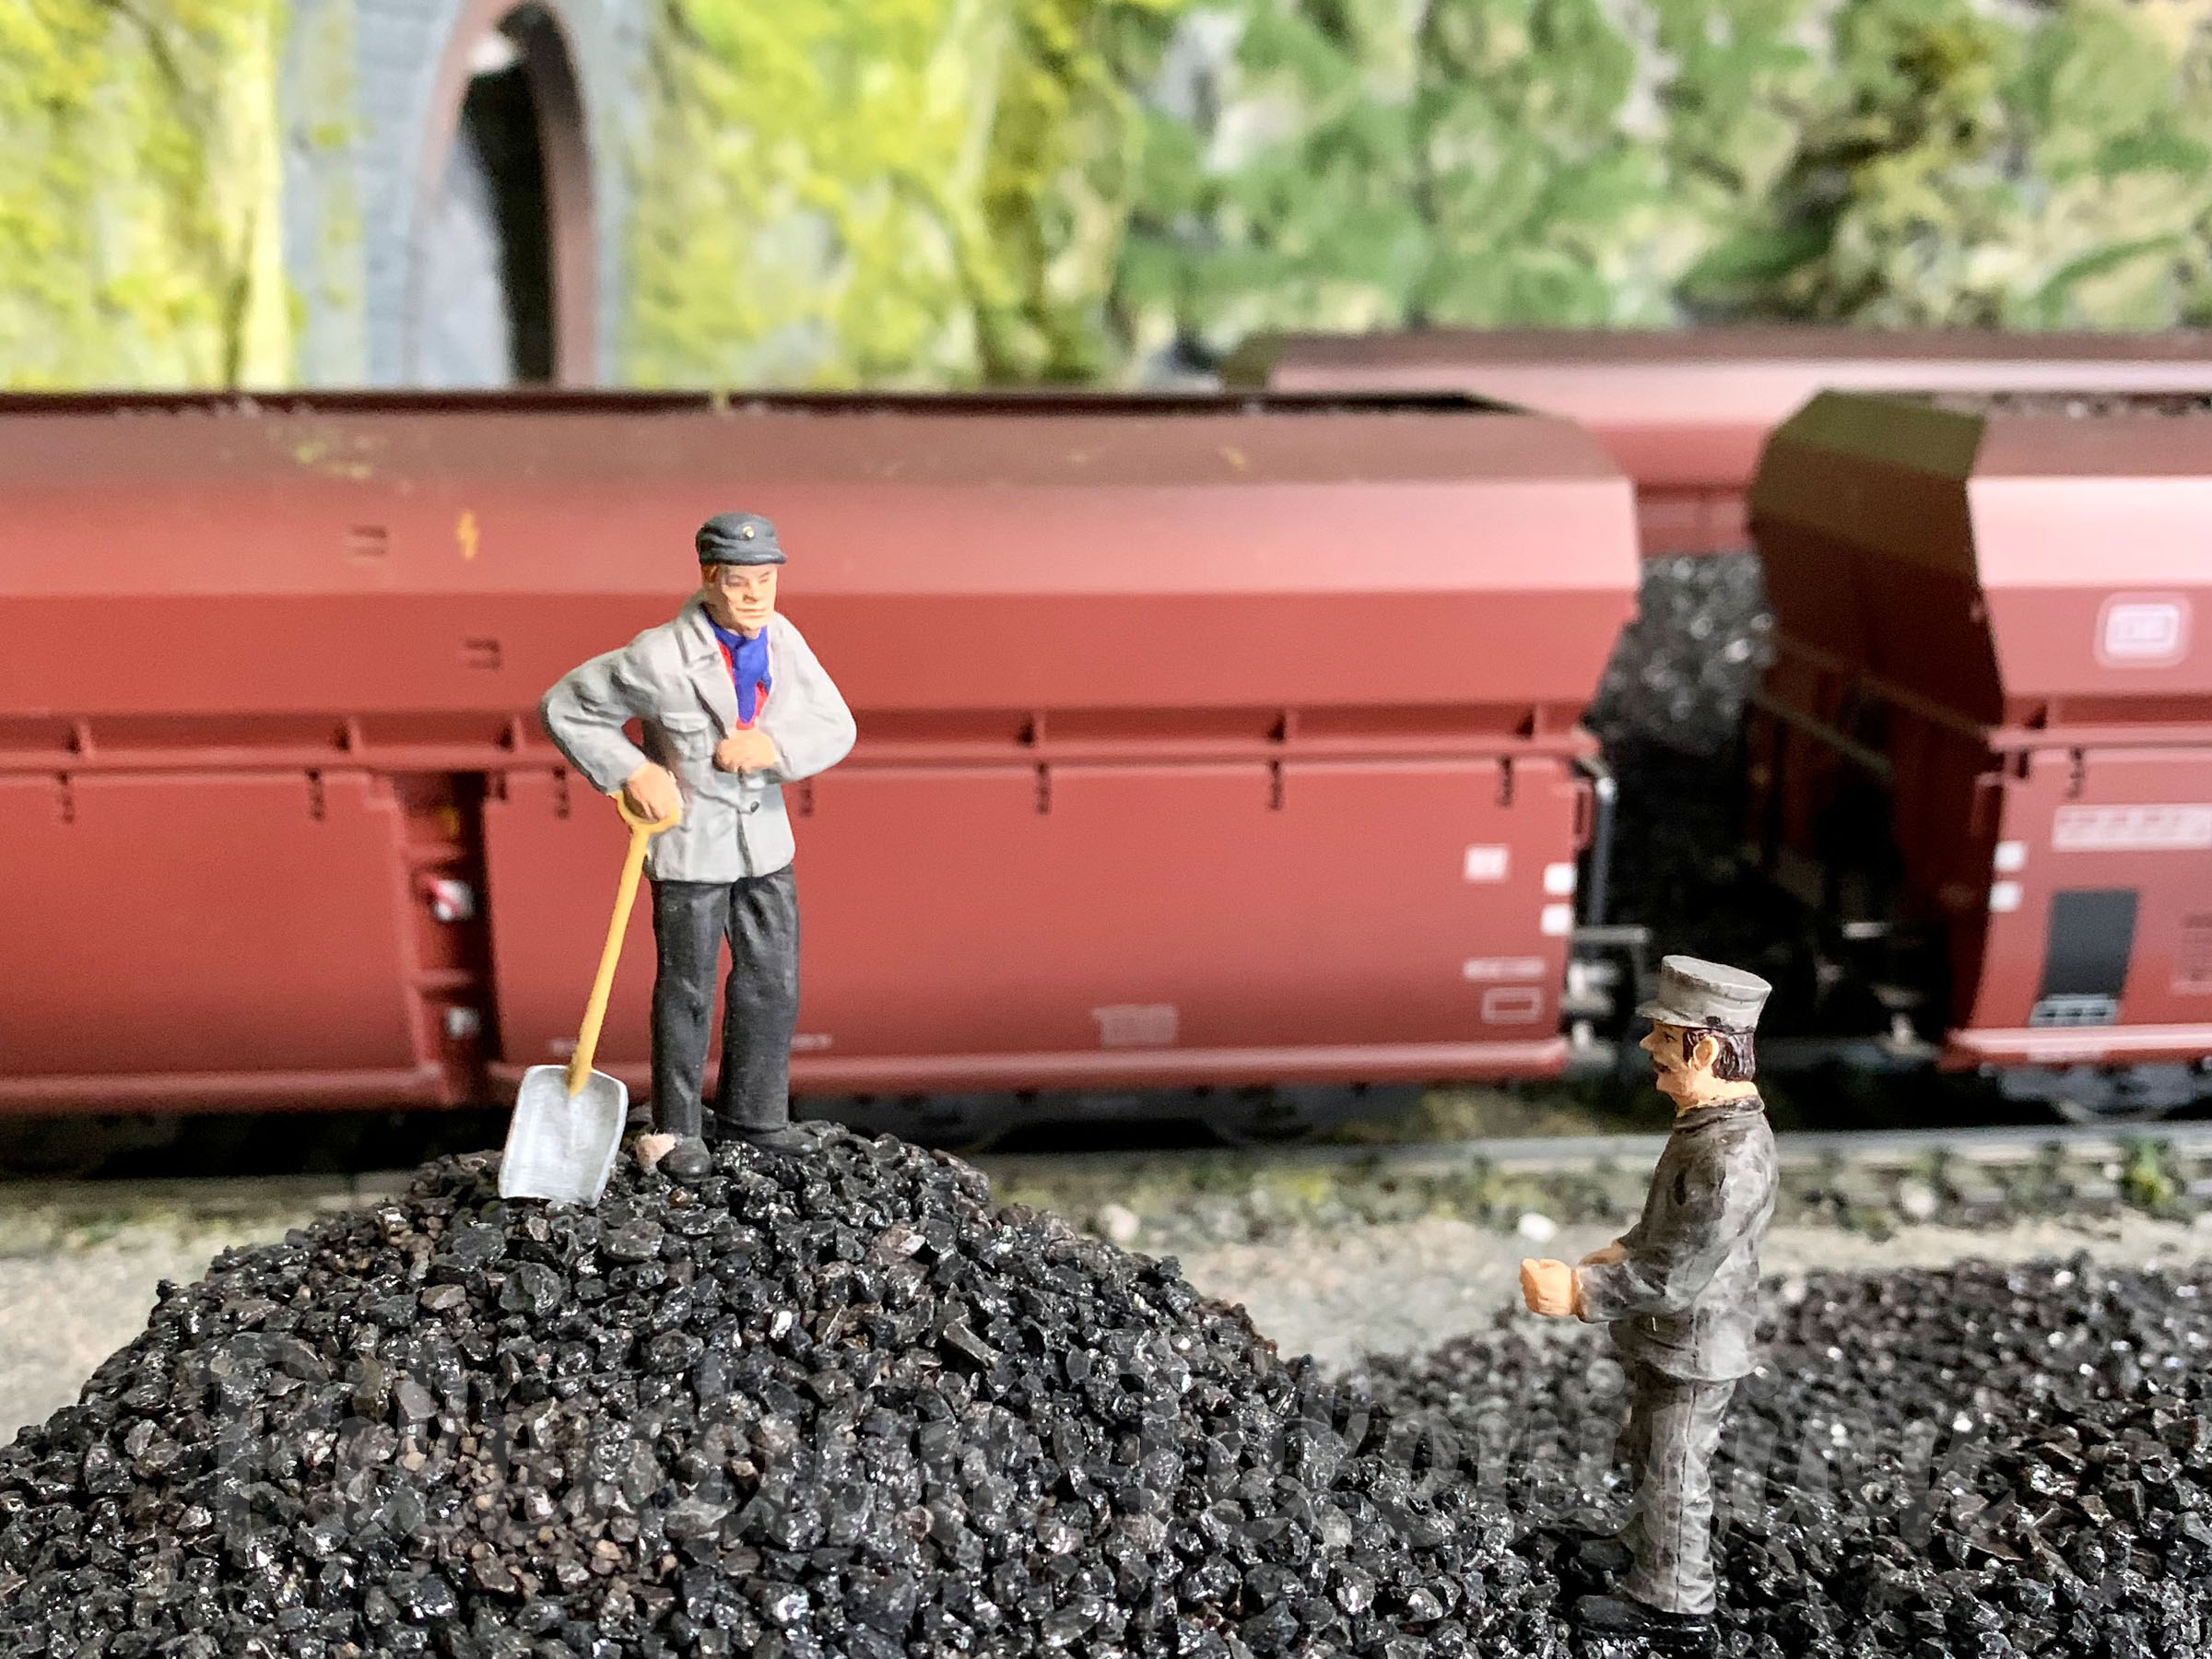 Arnolds modeljernbane i skala 1:32 - en miniatureverden for damplokomotiver